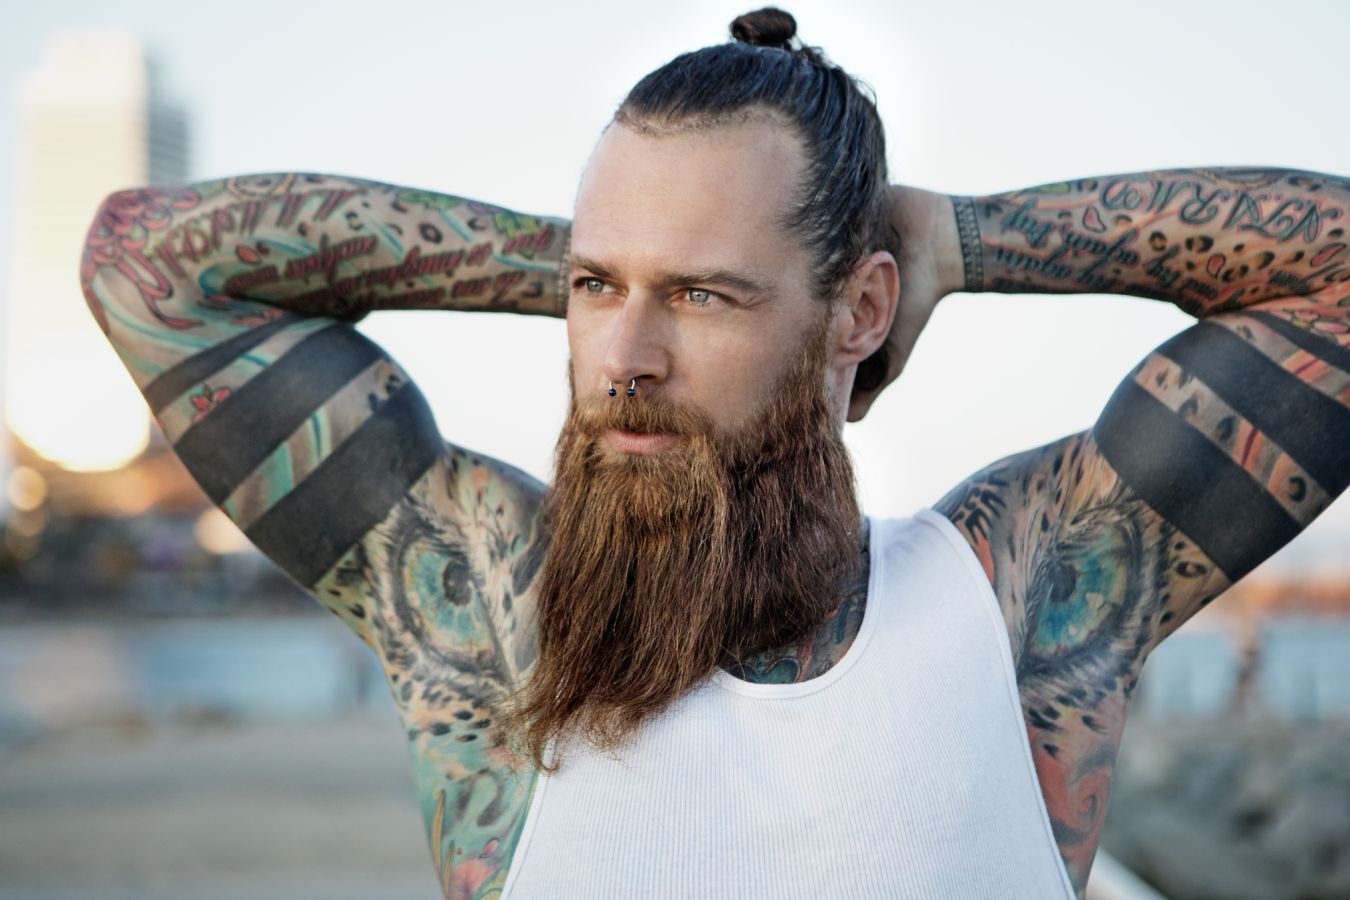 5 крутых мужских татуировок на бицепс и плечи: идеи для тату и фото